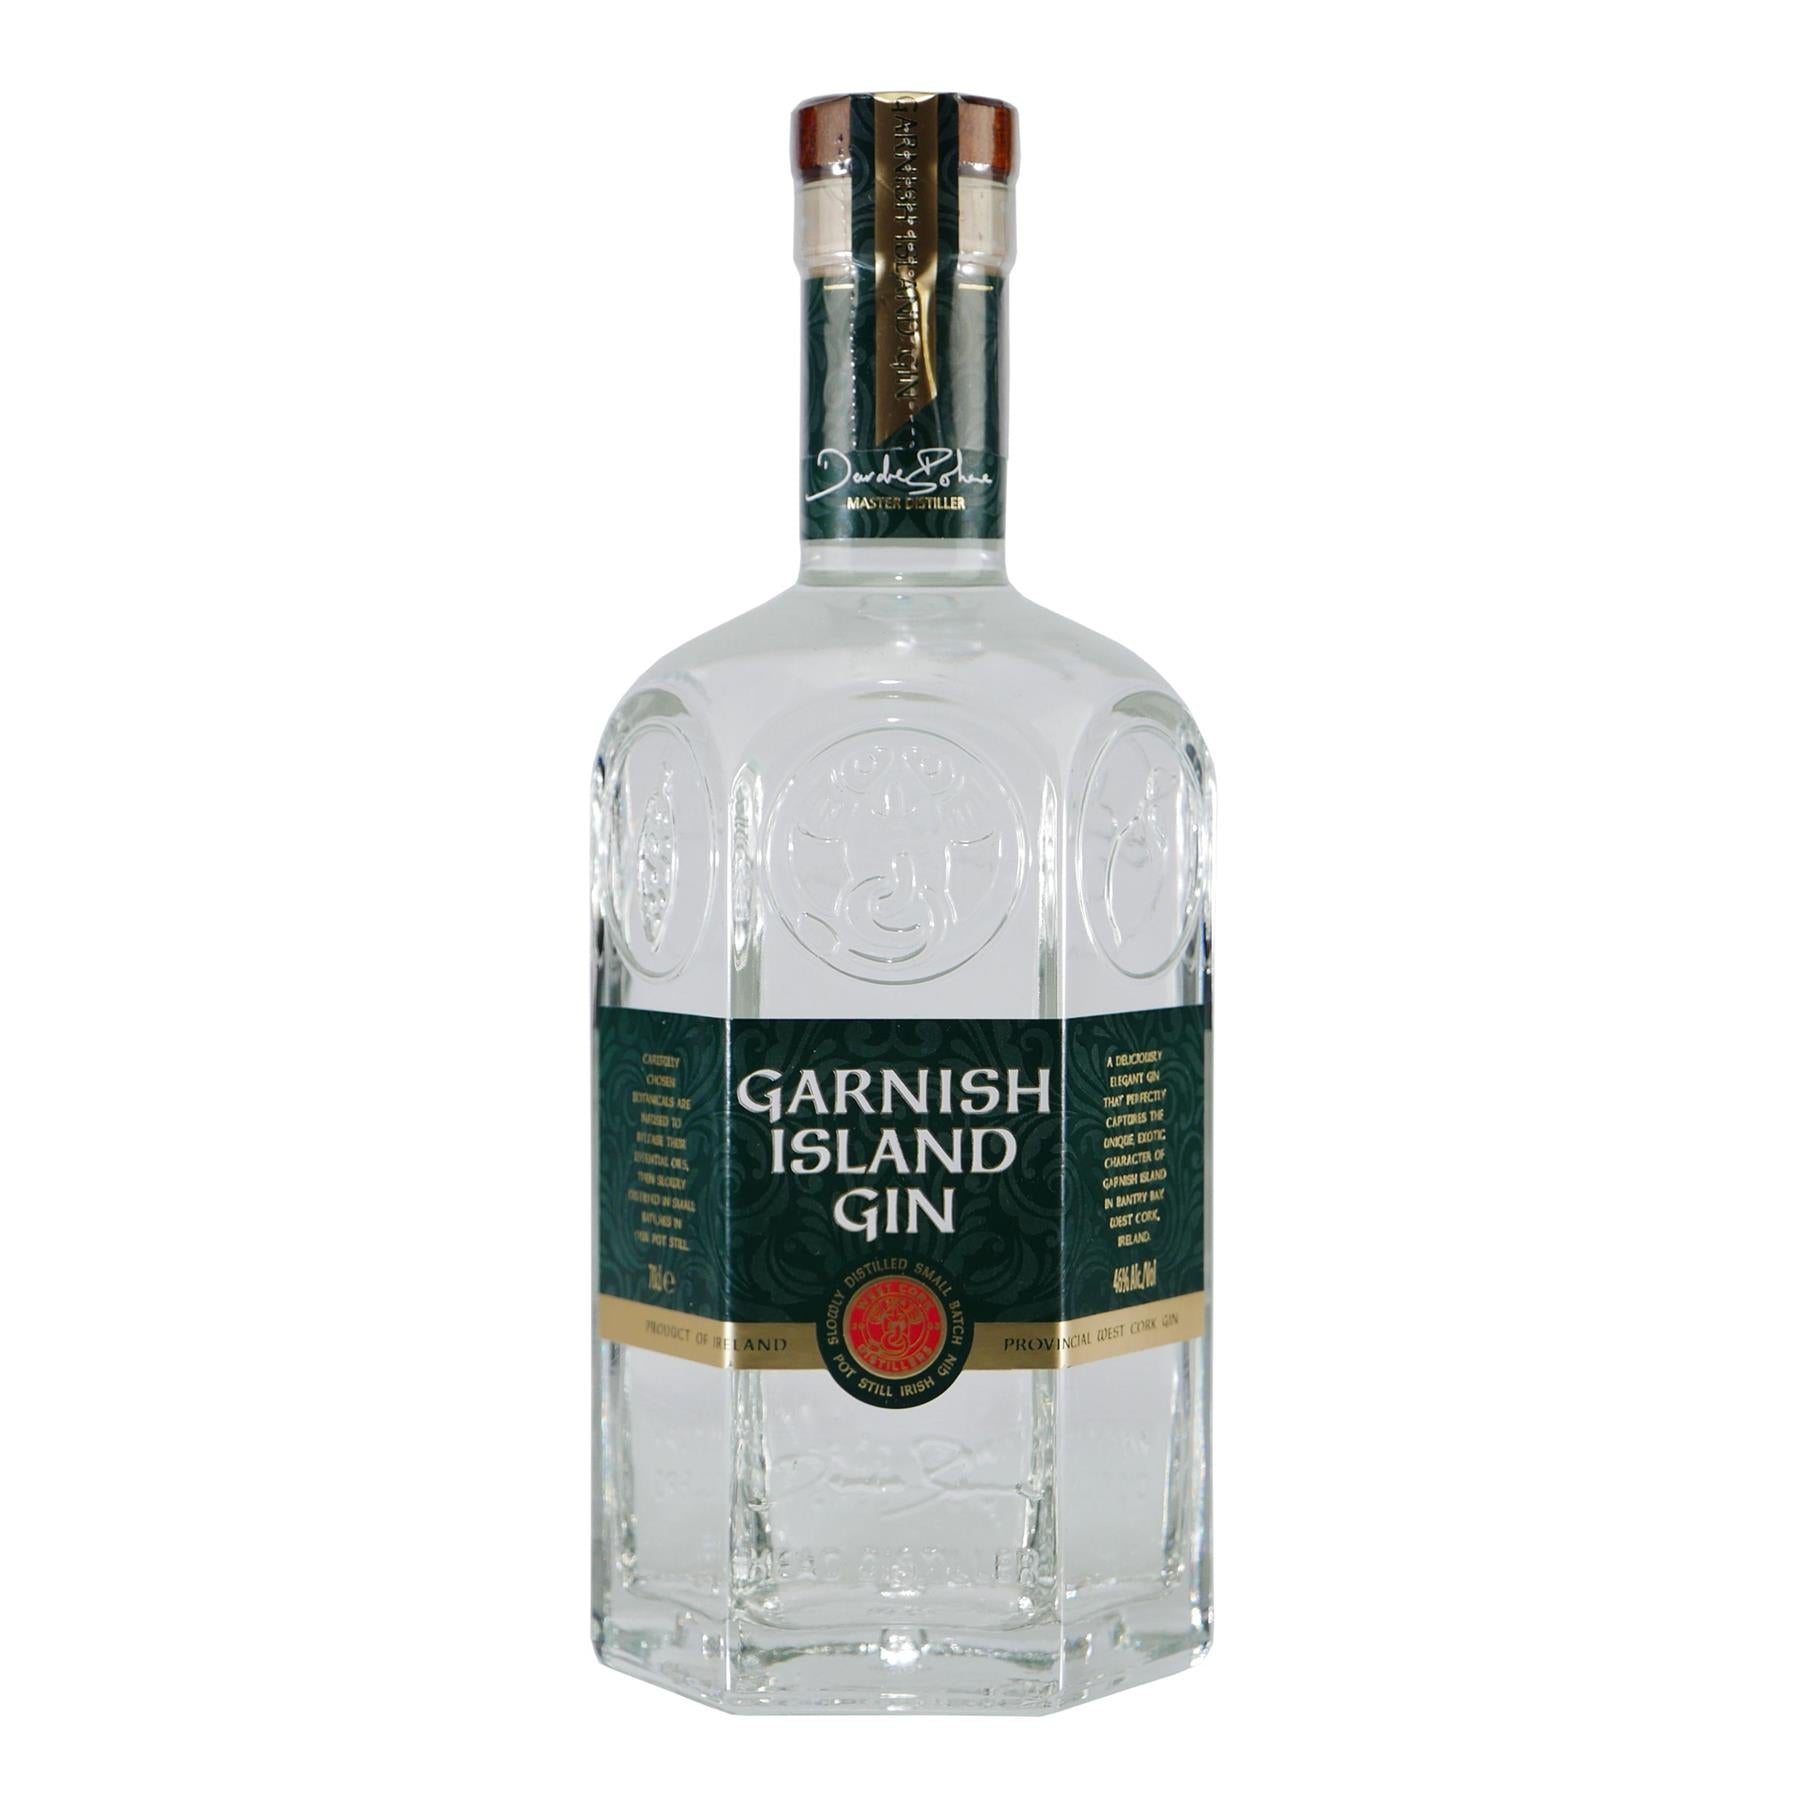 Garnish Island Small Batch Irish Gin